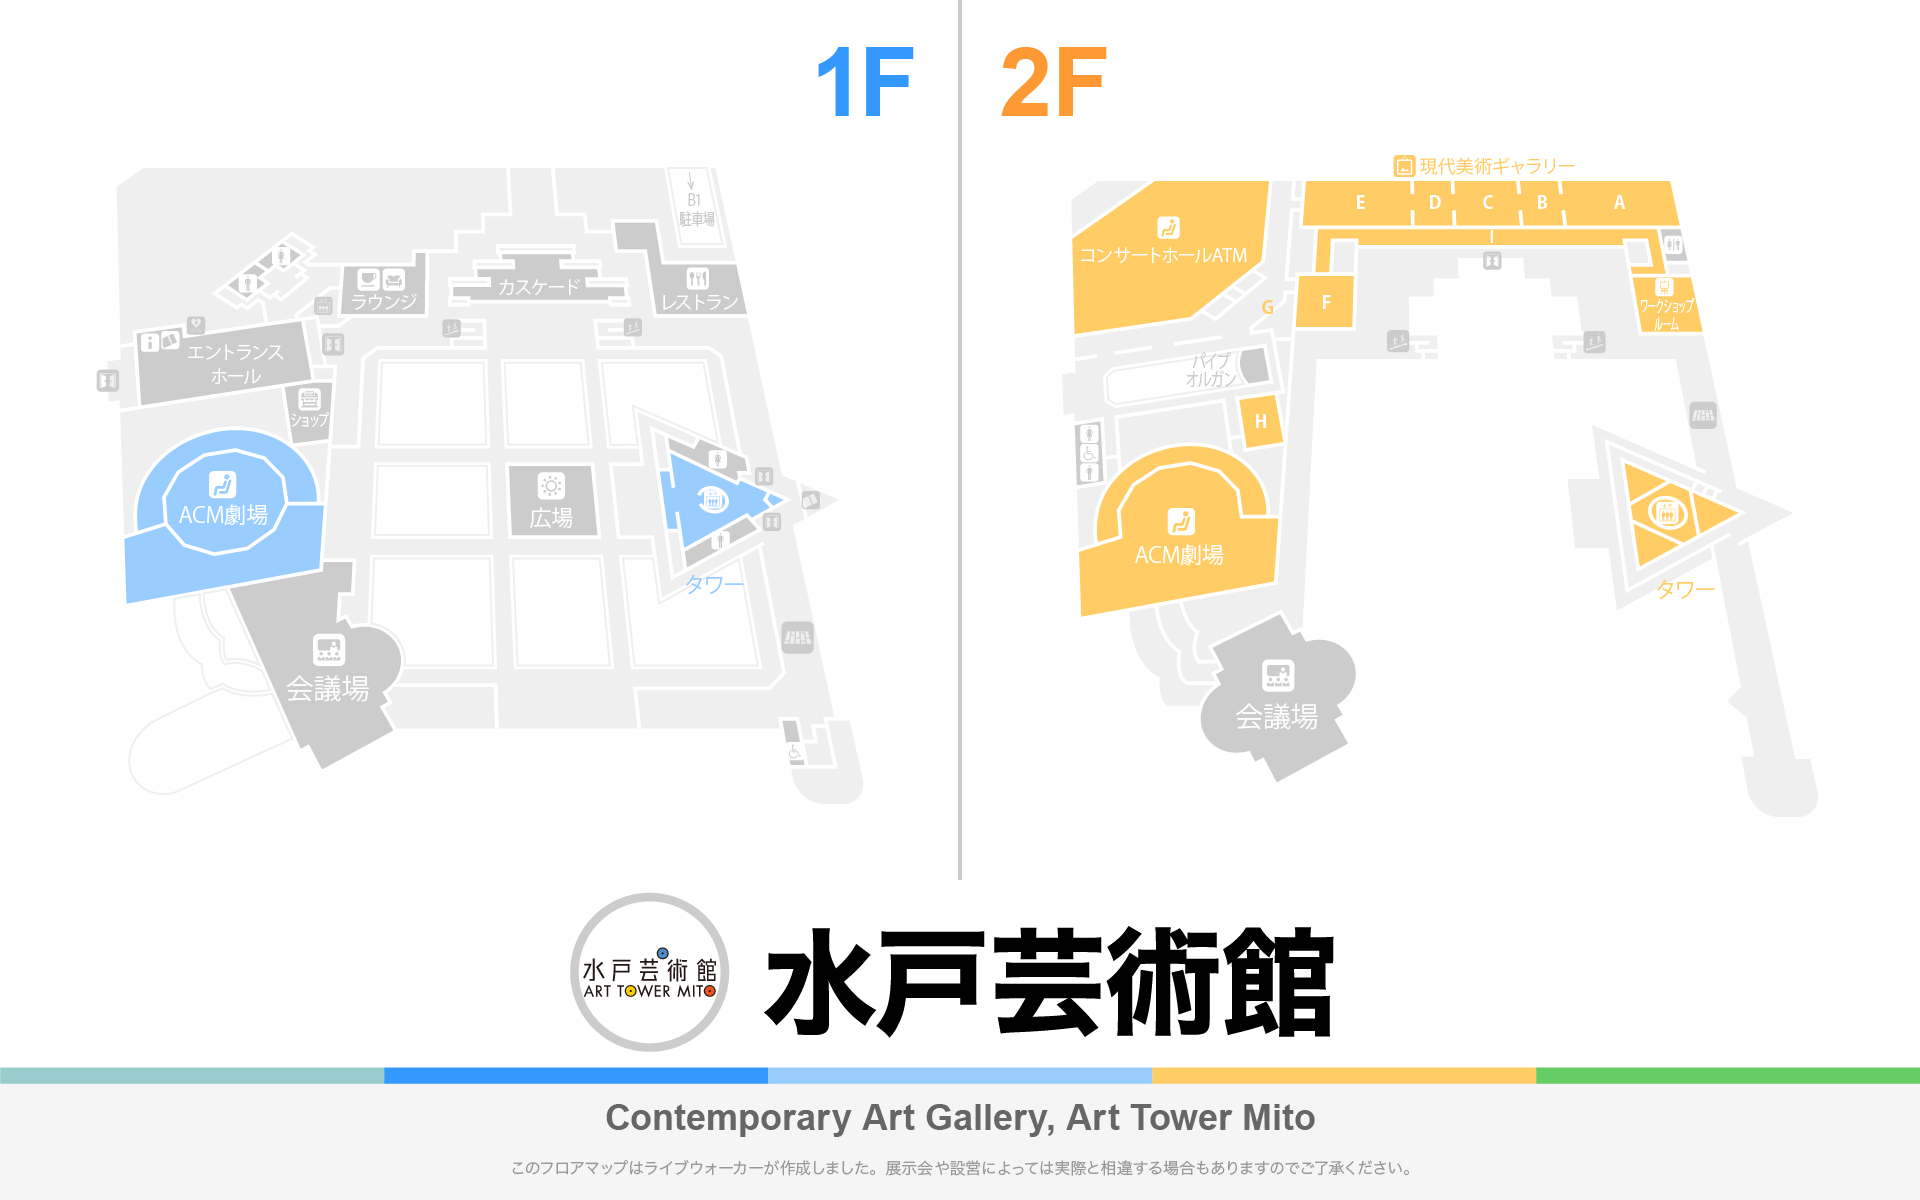 水戸芸術館 現代美術ギャラリーのフロアマップ